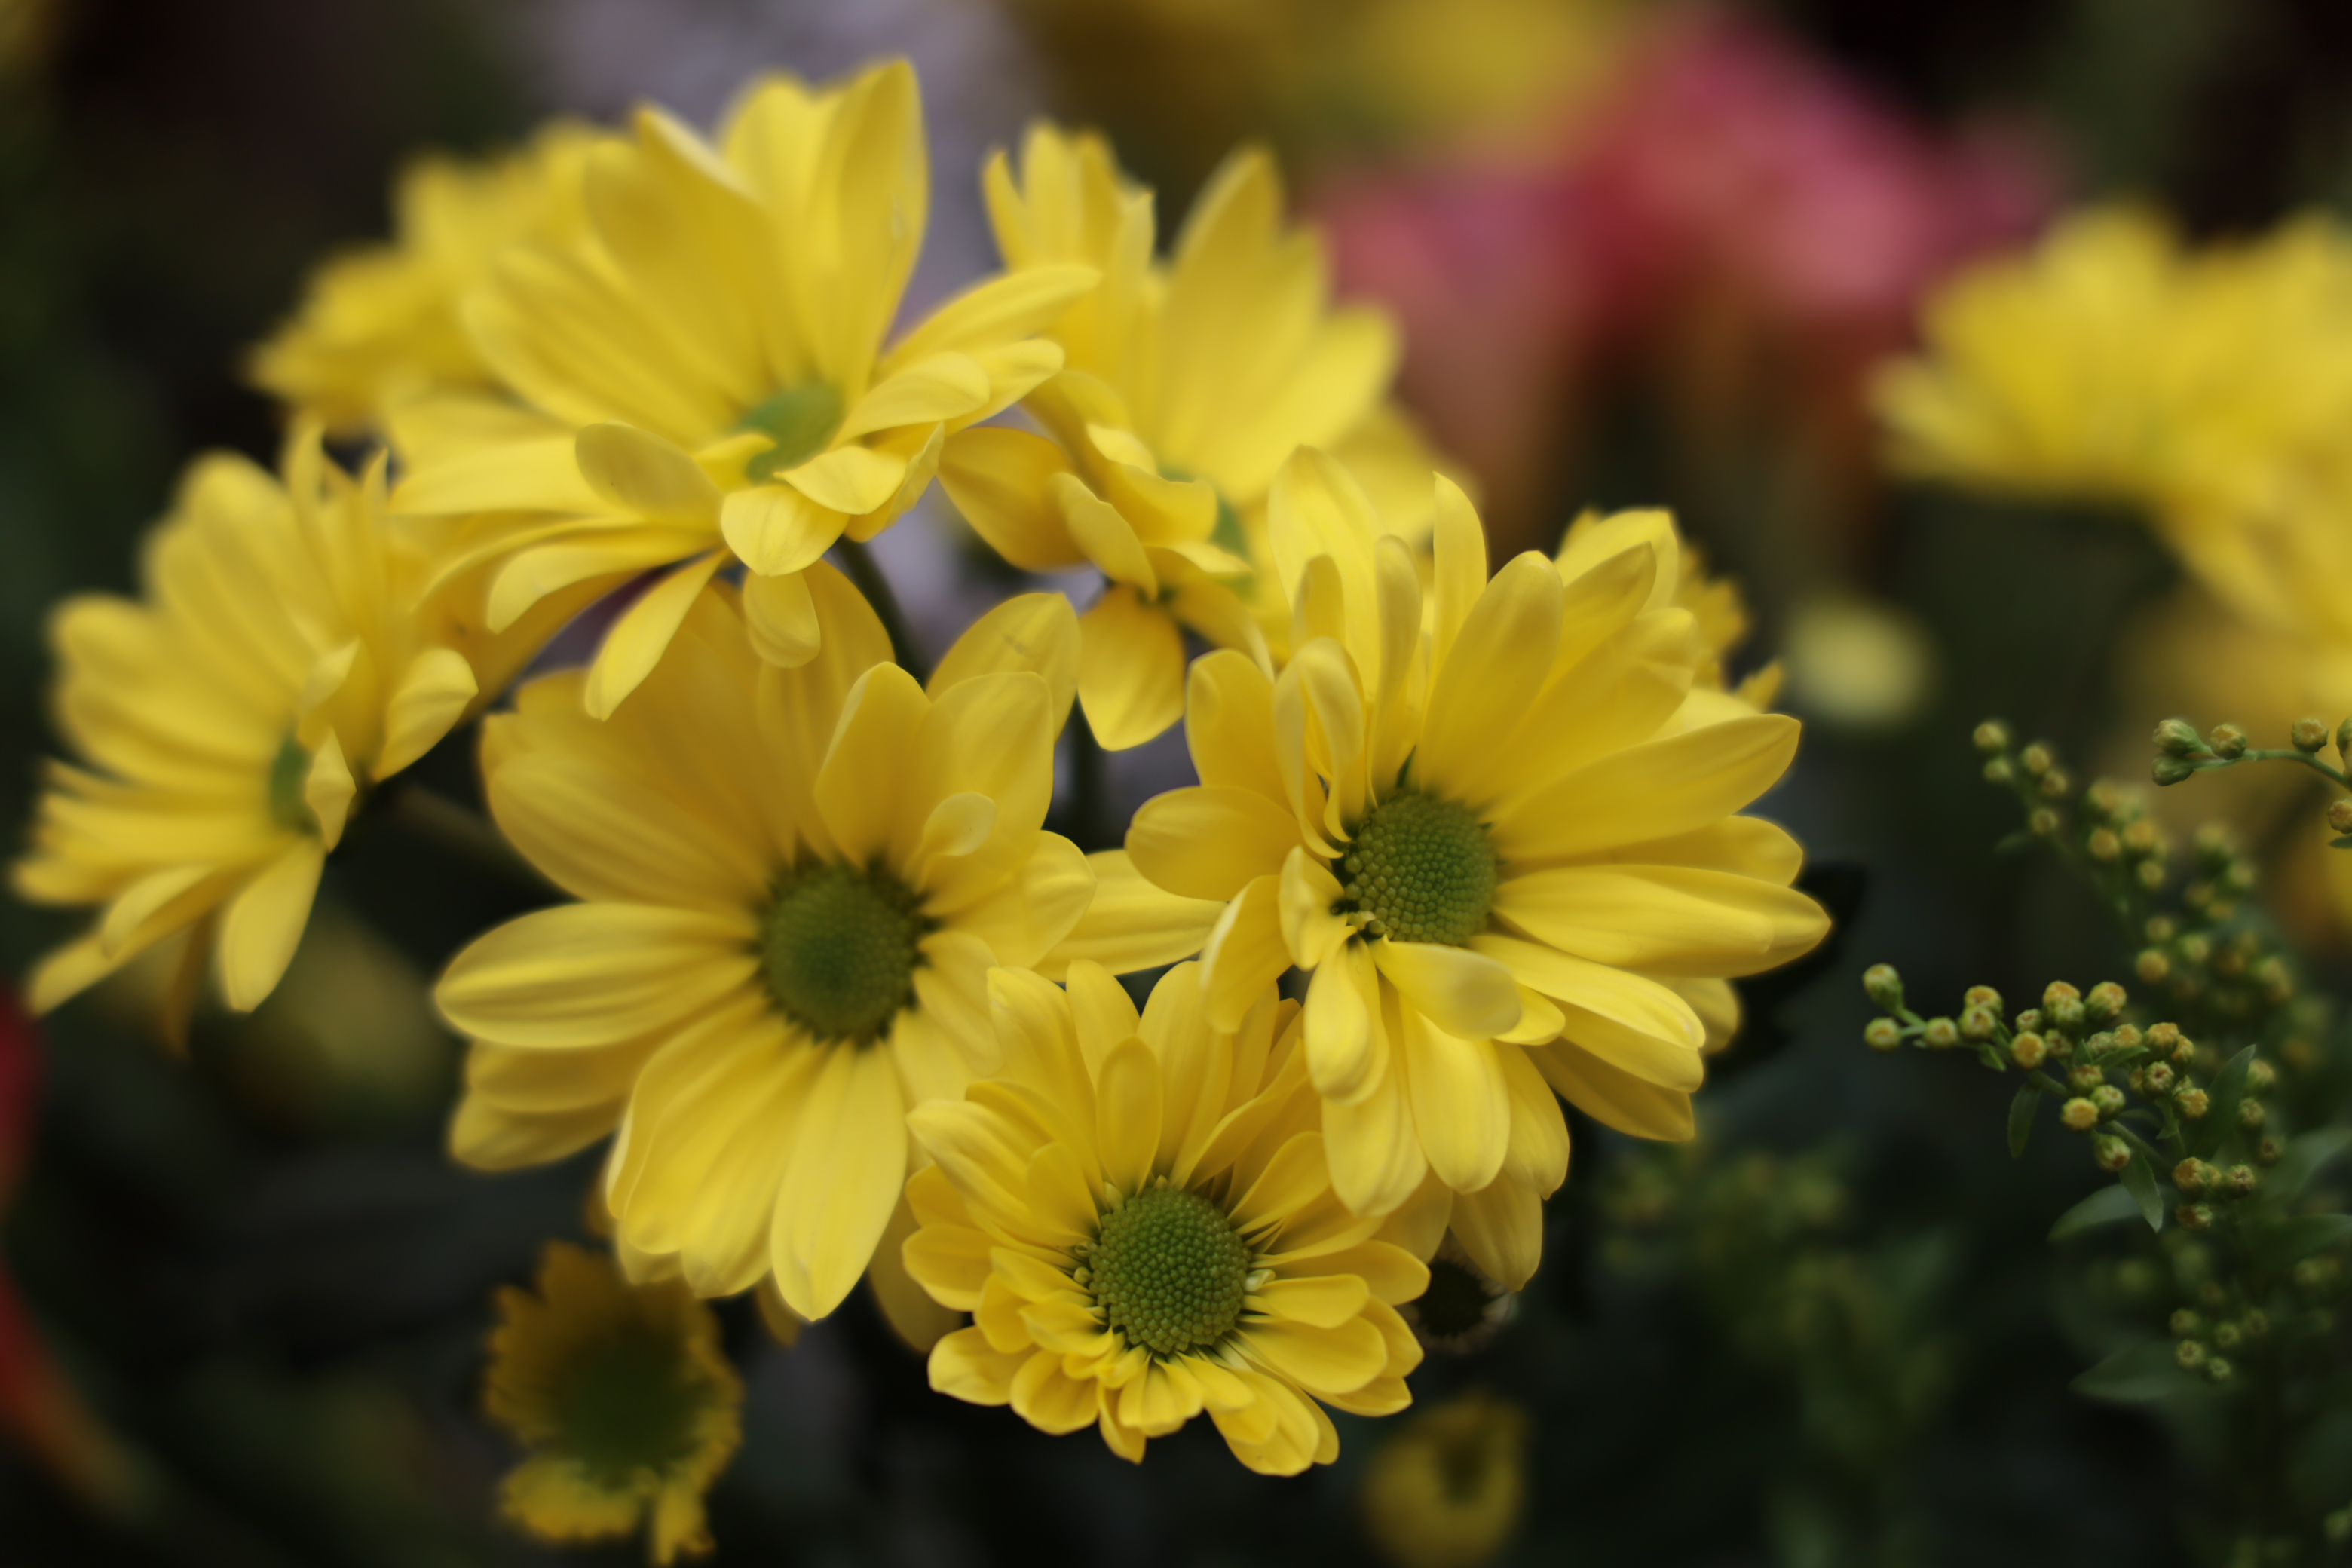 Blumen-Bouquet. Blende: 4.0, ISO 100, Verschlusszeit: 1/160s, Brennweite: 105mm